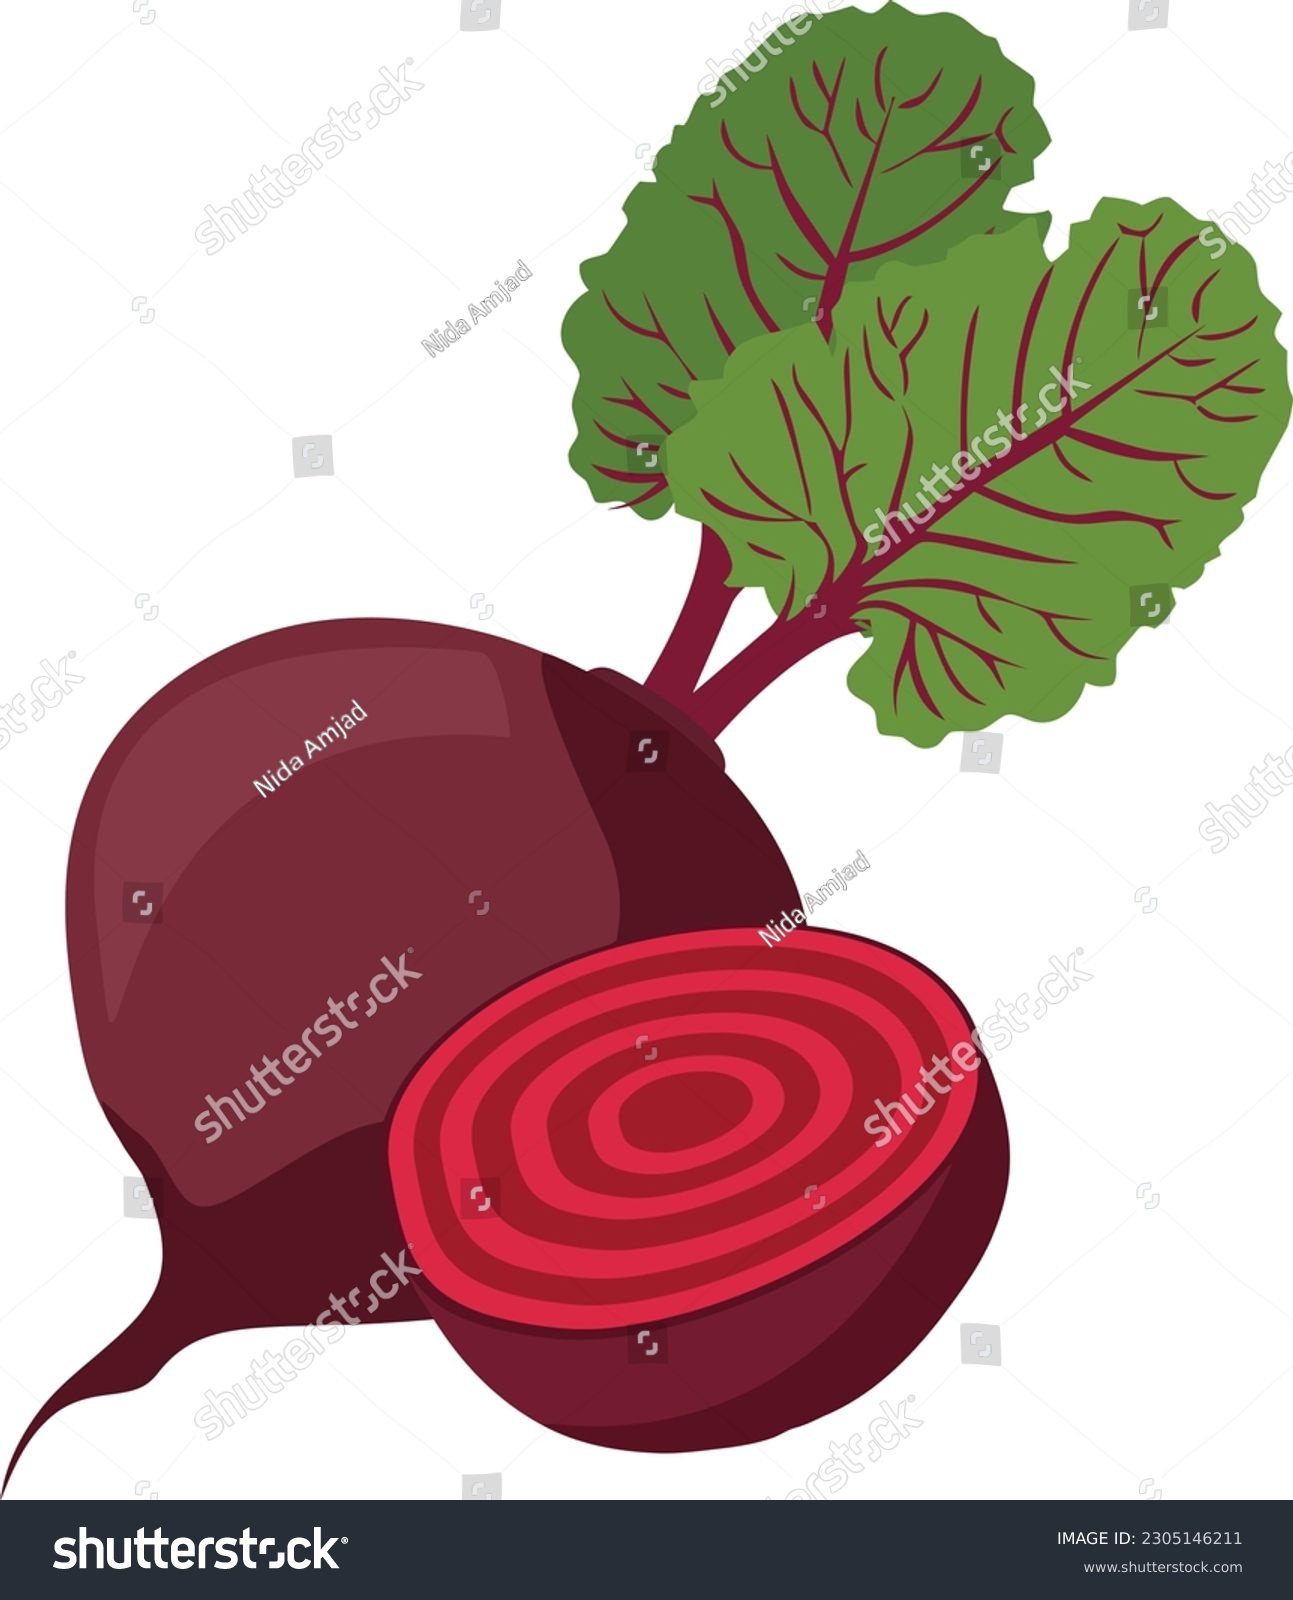 Beetroot Vegetable, Beetroot Illustration, Beetroot Vector art, vegetable illustration #2305146211